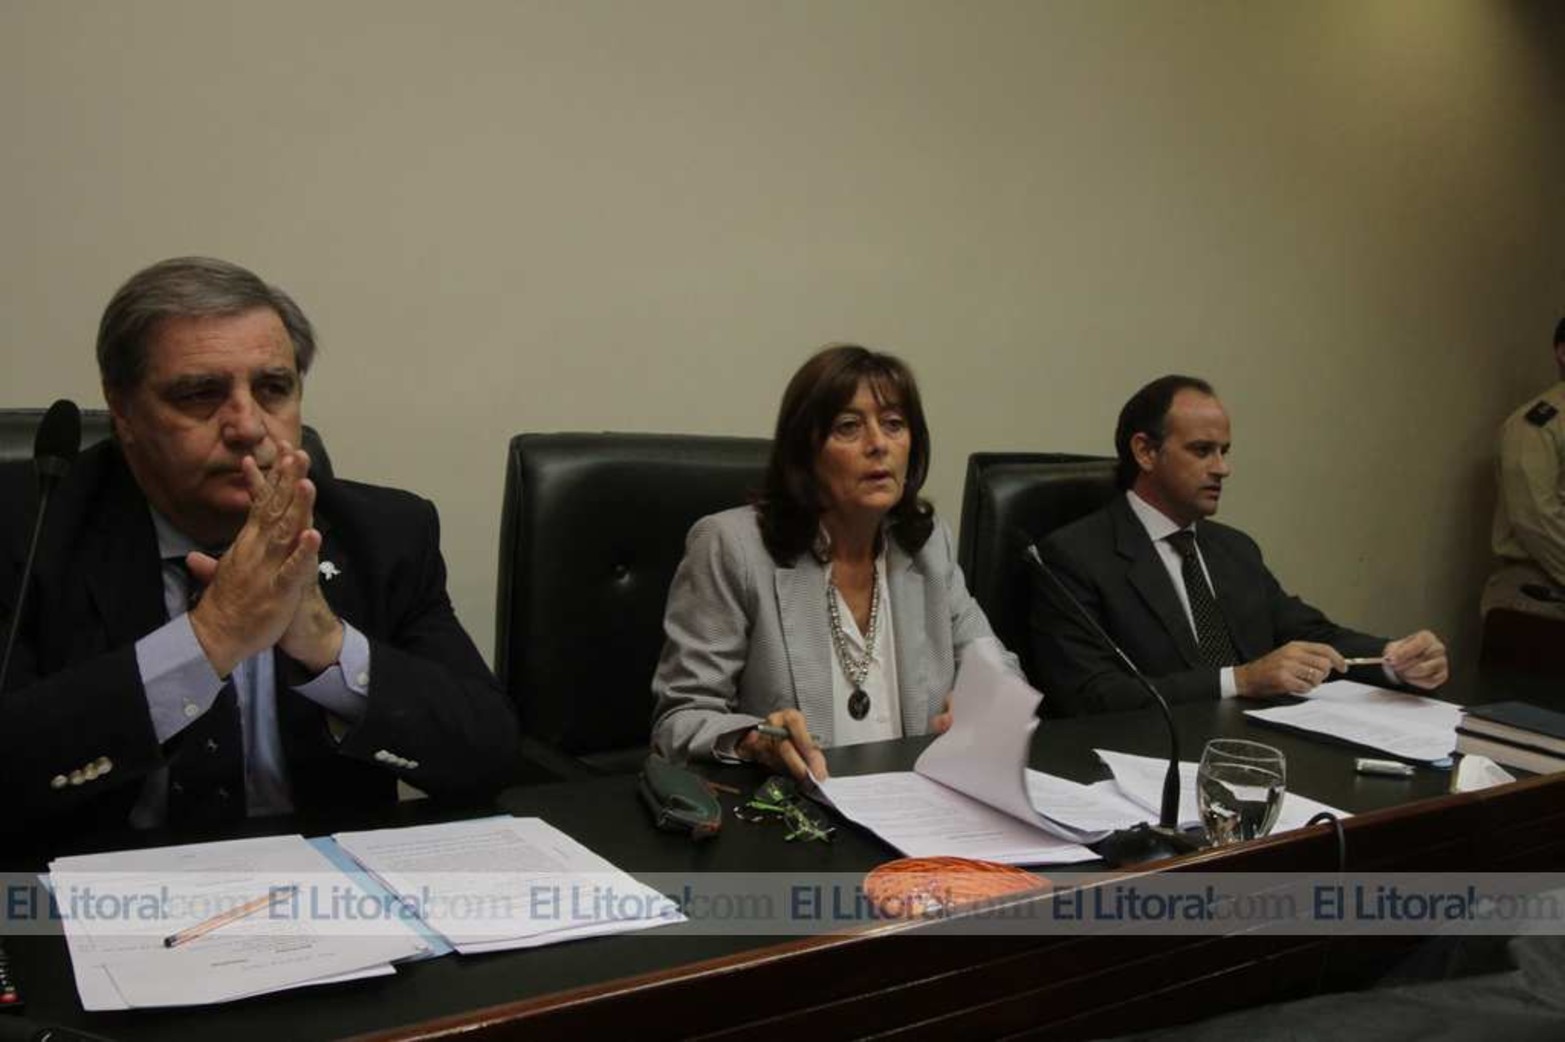 El 22 de mayo último el Tribunal Oral Federal, integrado por los jueces José María Escobar Cello, María Ivón Vella (presidente) y Luciano H. Lauría, abrió el debate que finalizó en condena el 22 de junio.